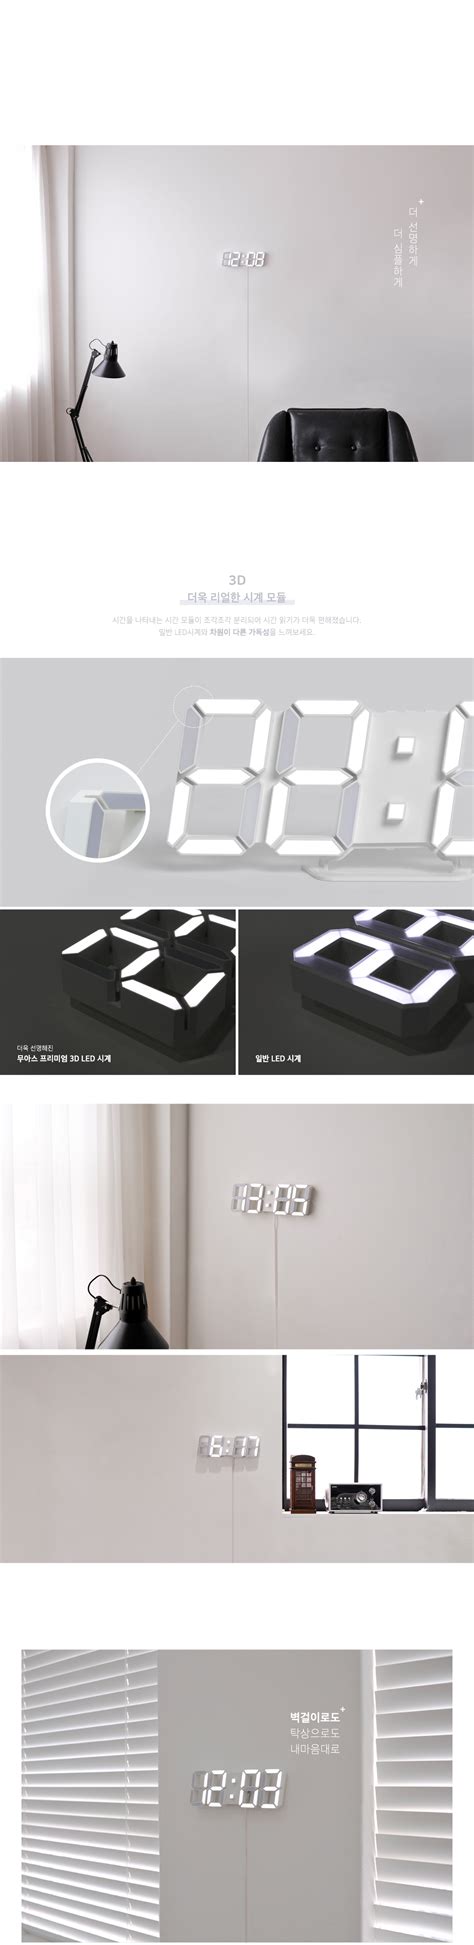 3D-LED-Clock_White_03.jpg